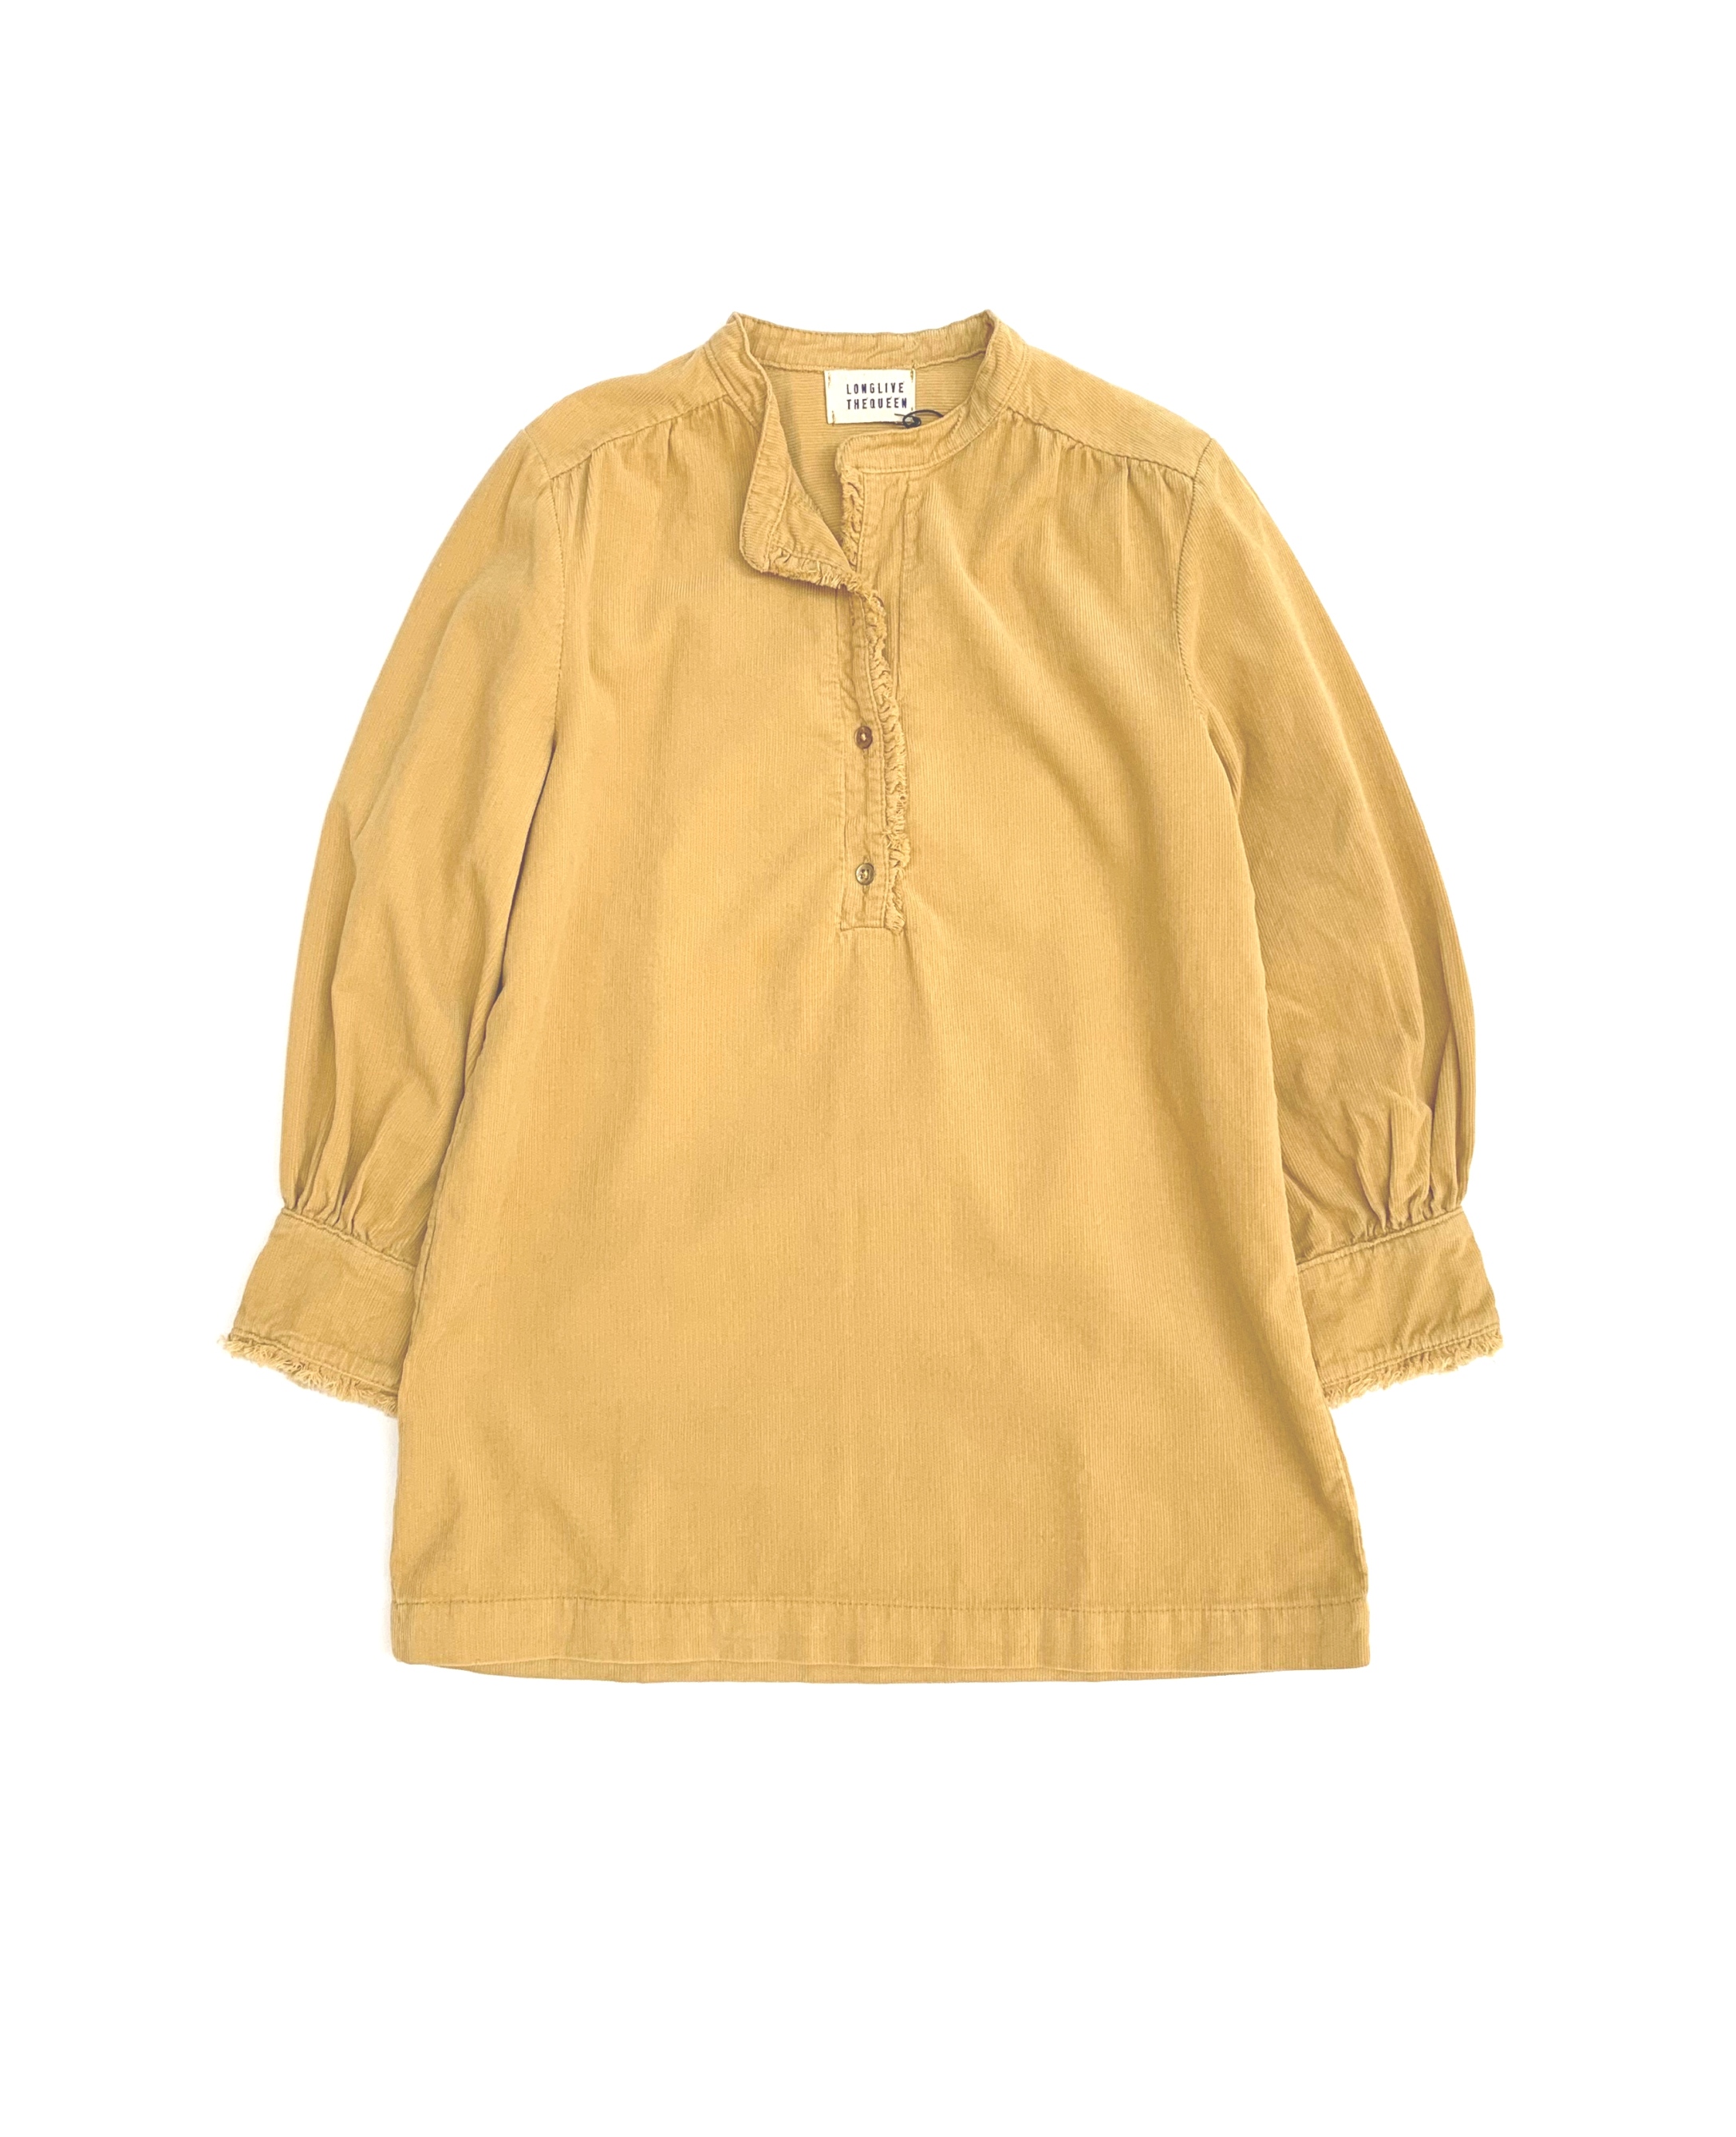 Dit geel kort jurkje 21222 van shopt u bij Ontdek er een uniek aanbod exclusieve kinderkleding merken to -